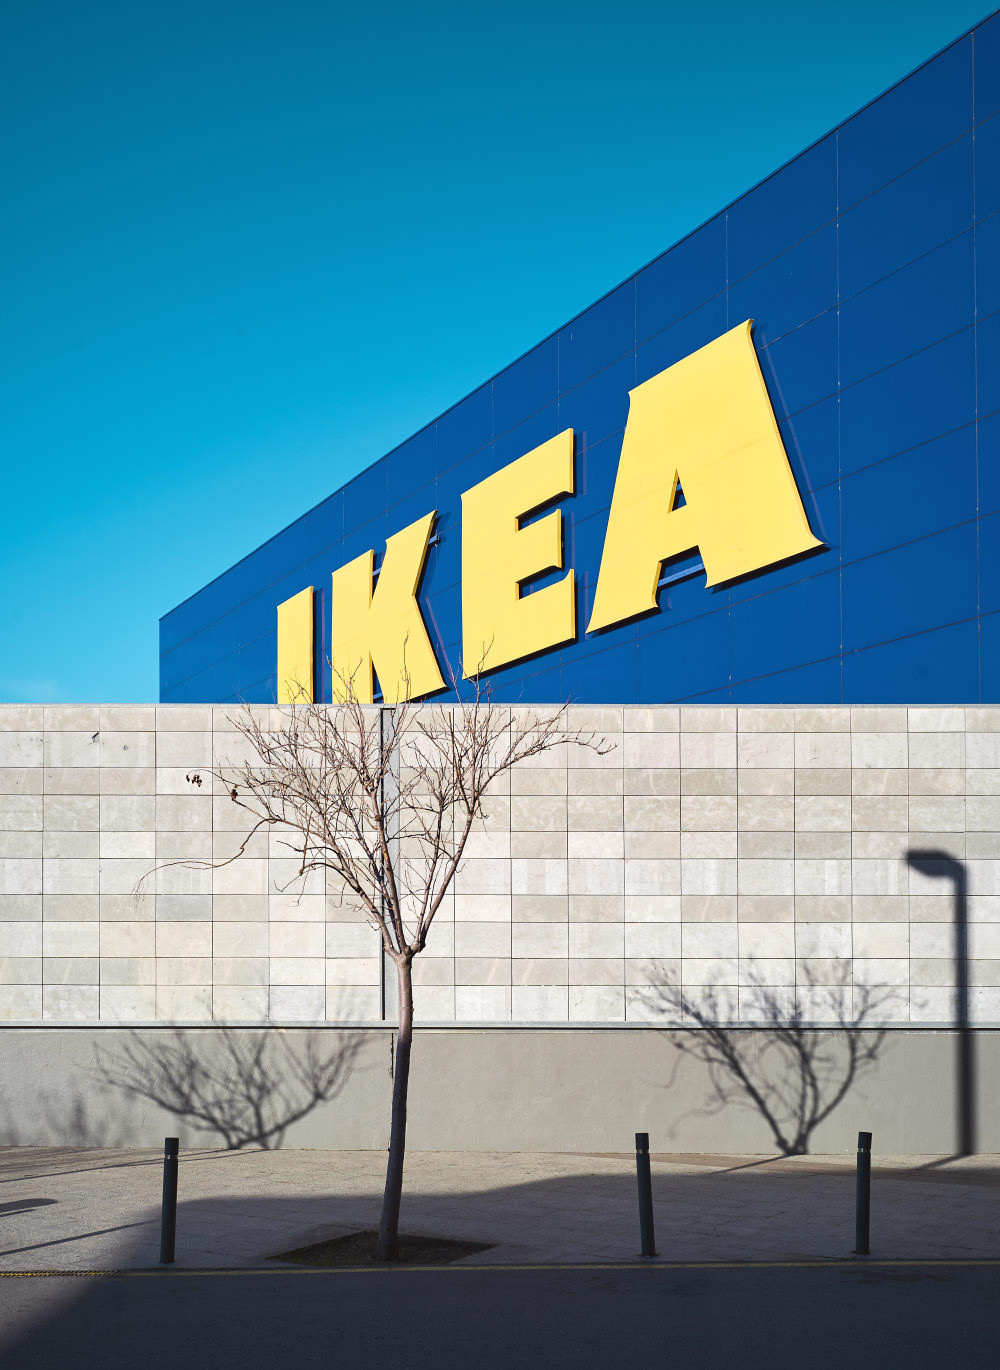 Blick auf eine Mauer, mit Schattenspiel und Ikea Warenhaus im Hintergrund